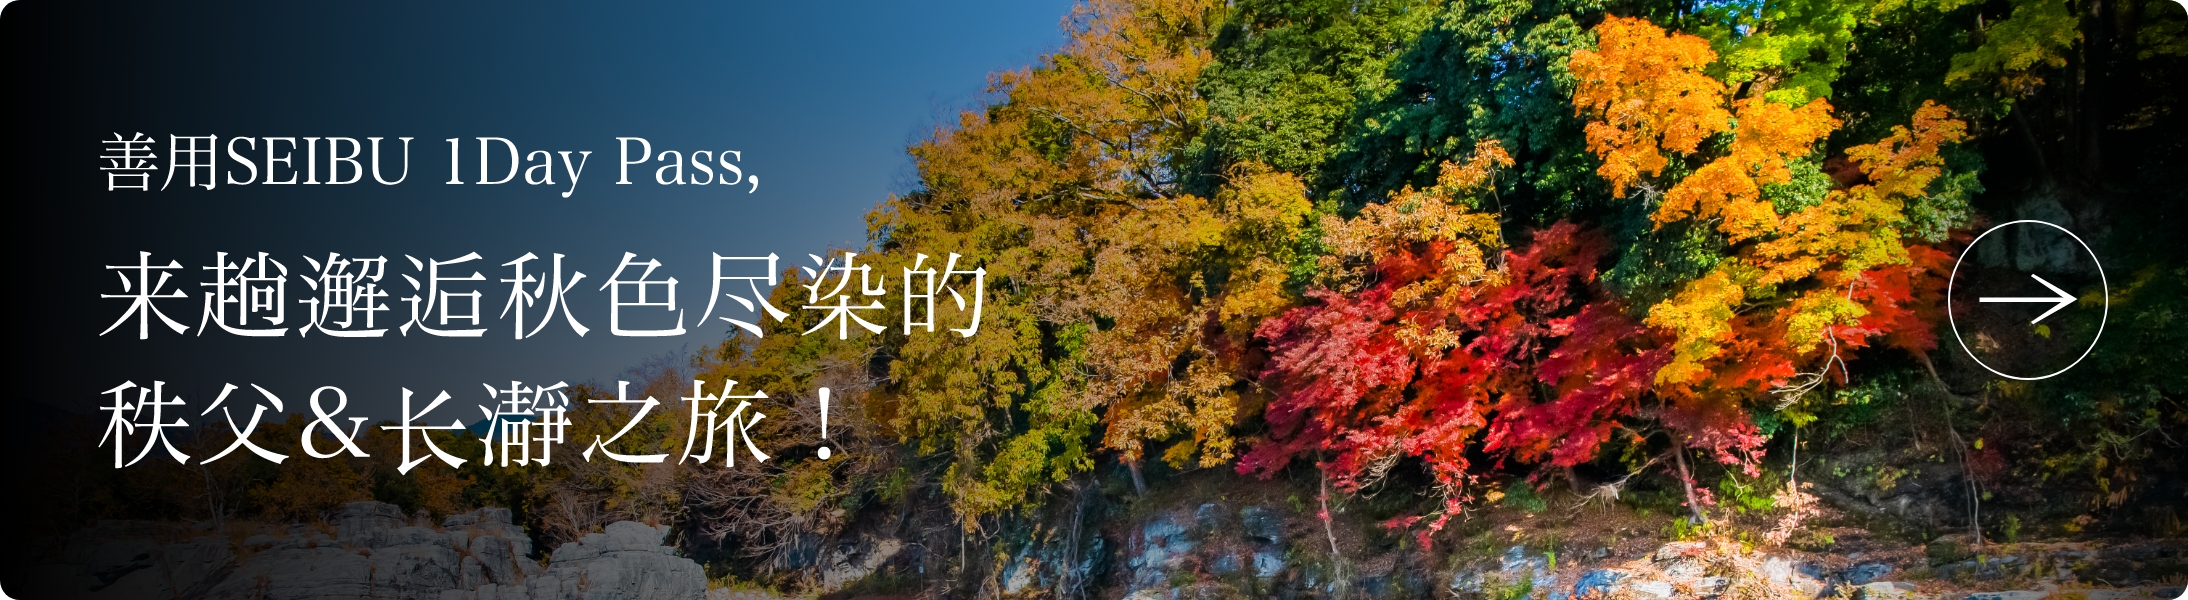 善用SEIBU 1Day Pass，<br>来趟邂逅秋色尽染的秩父&长瀞之旅！